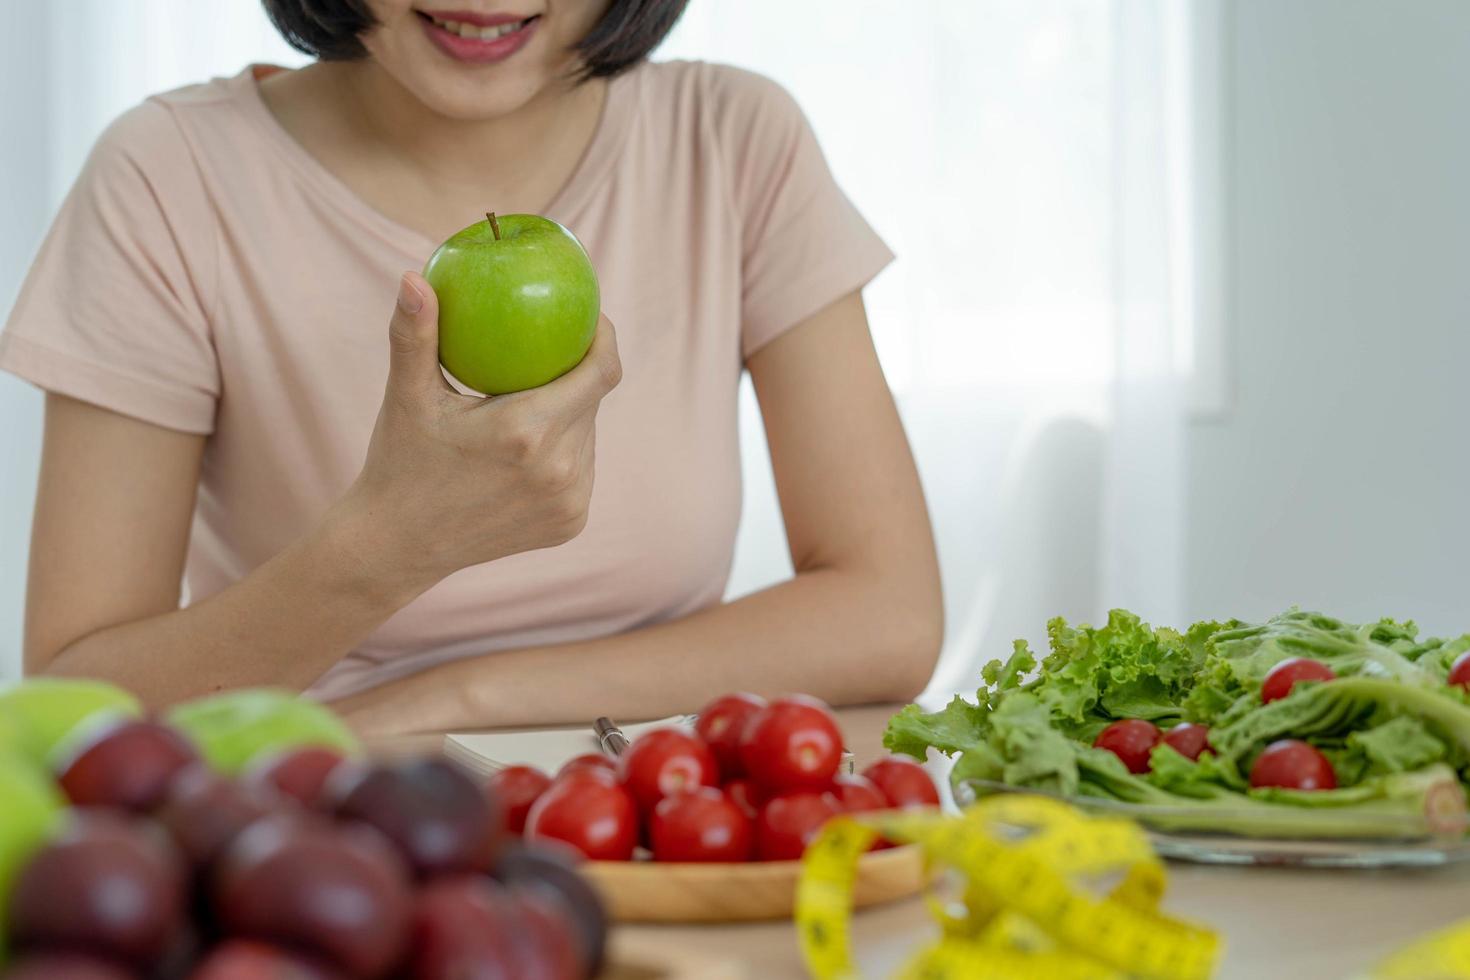 comida saudável e dieta cetônica. as mulheres planejam dietas para uma forma esbelta e saudável. mulher comendo maçã e legumes foto